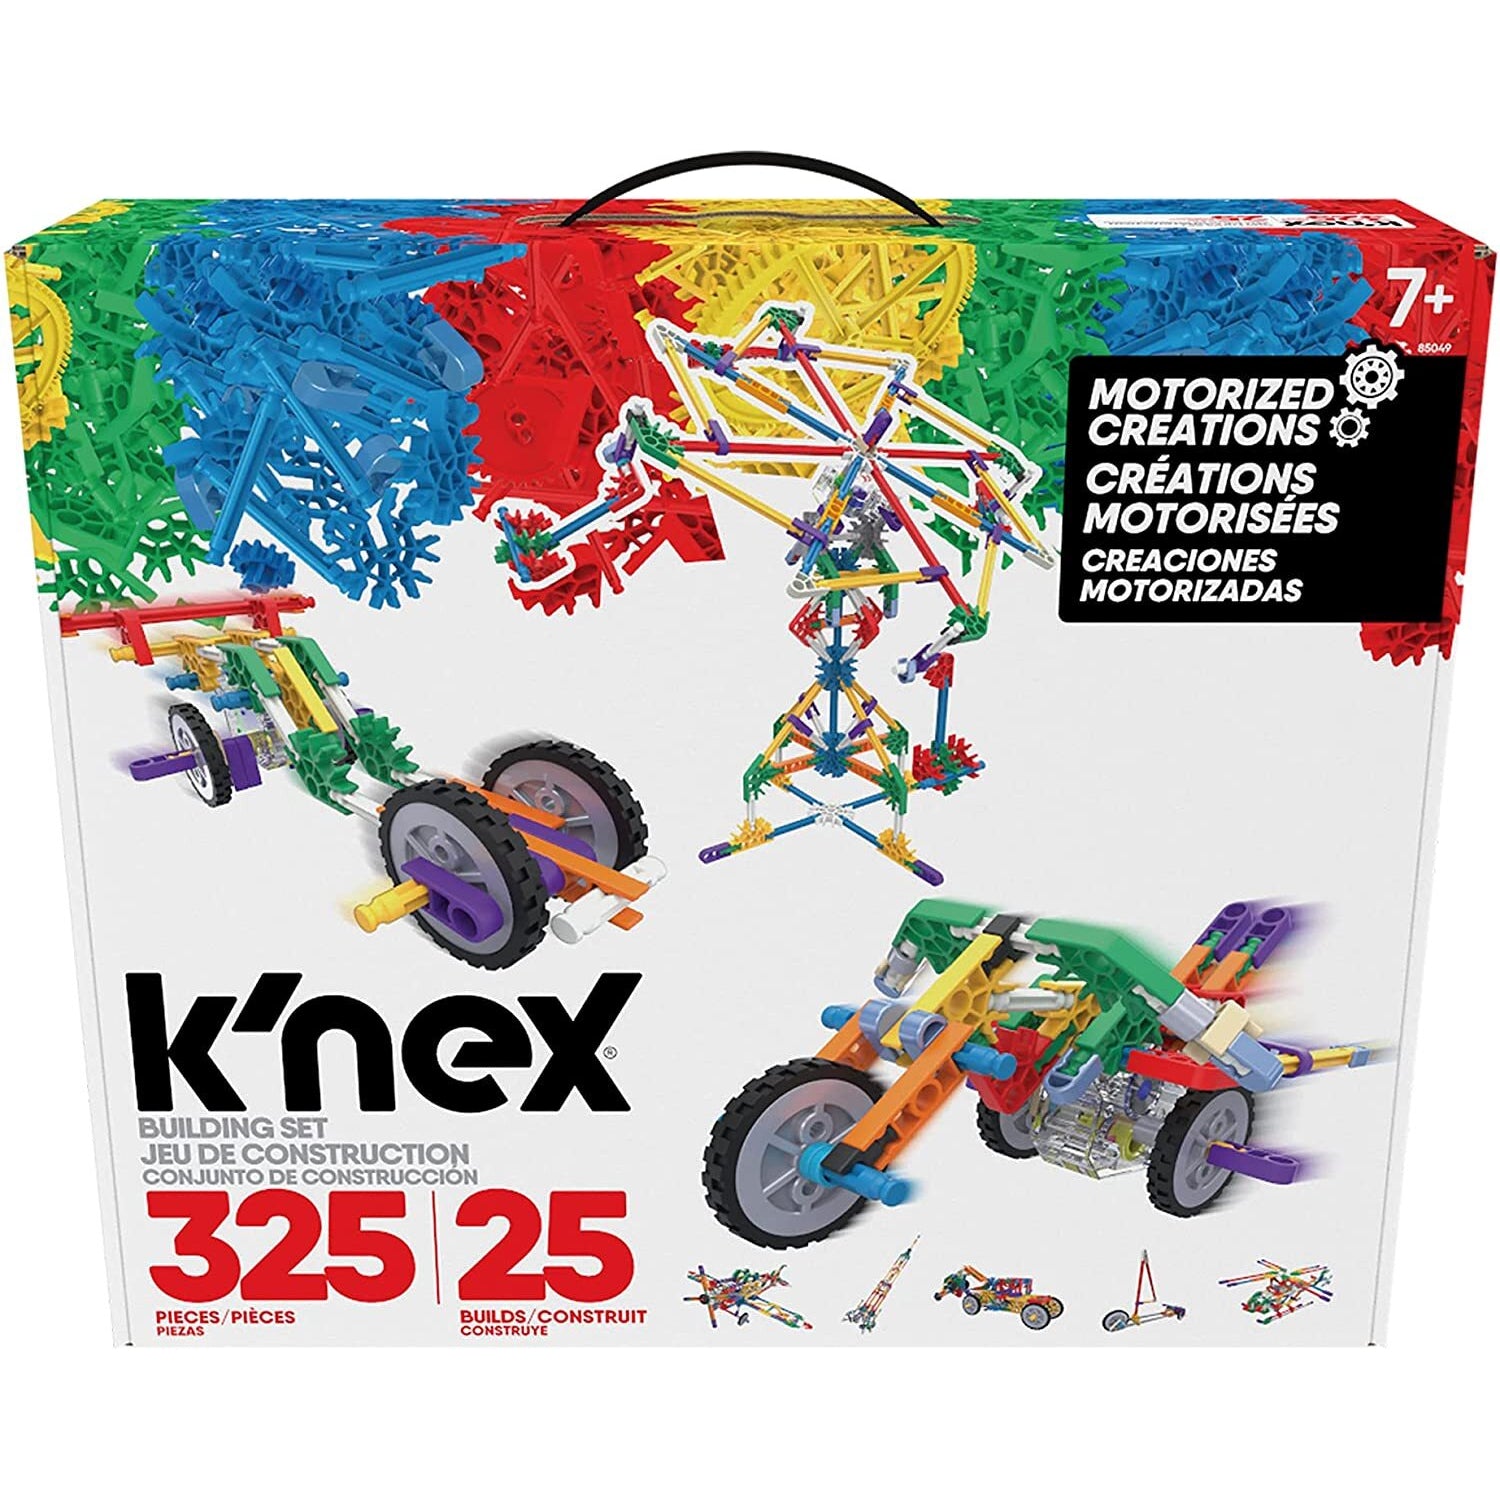 Knex 电动创作 -25 款 / 325 件